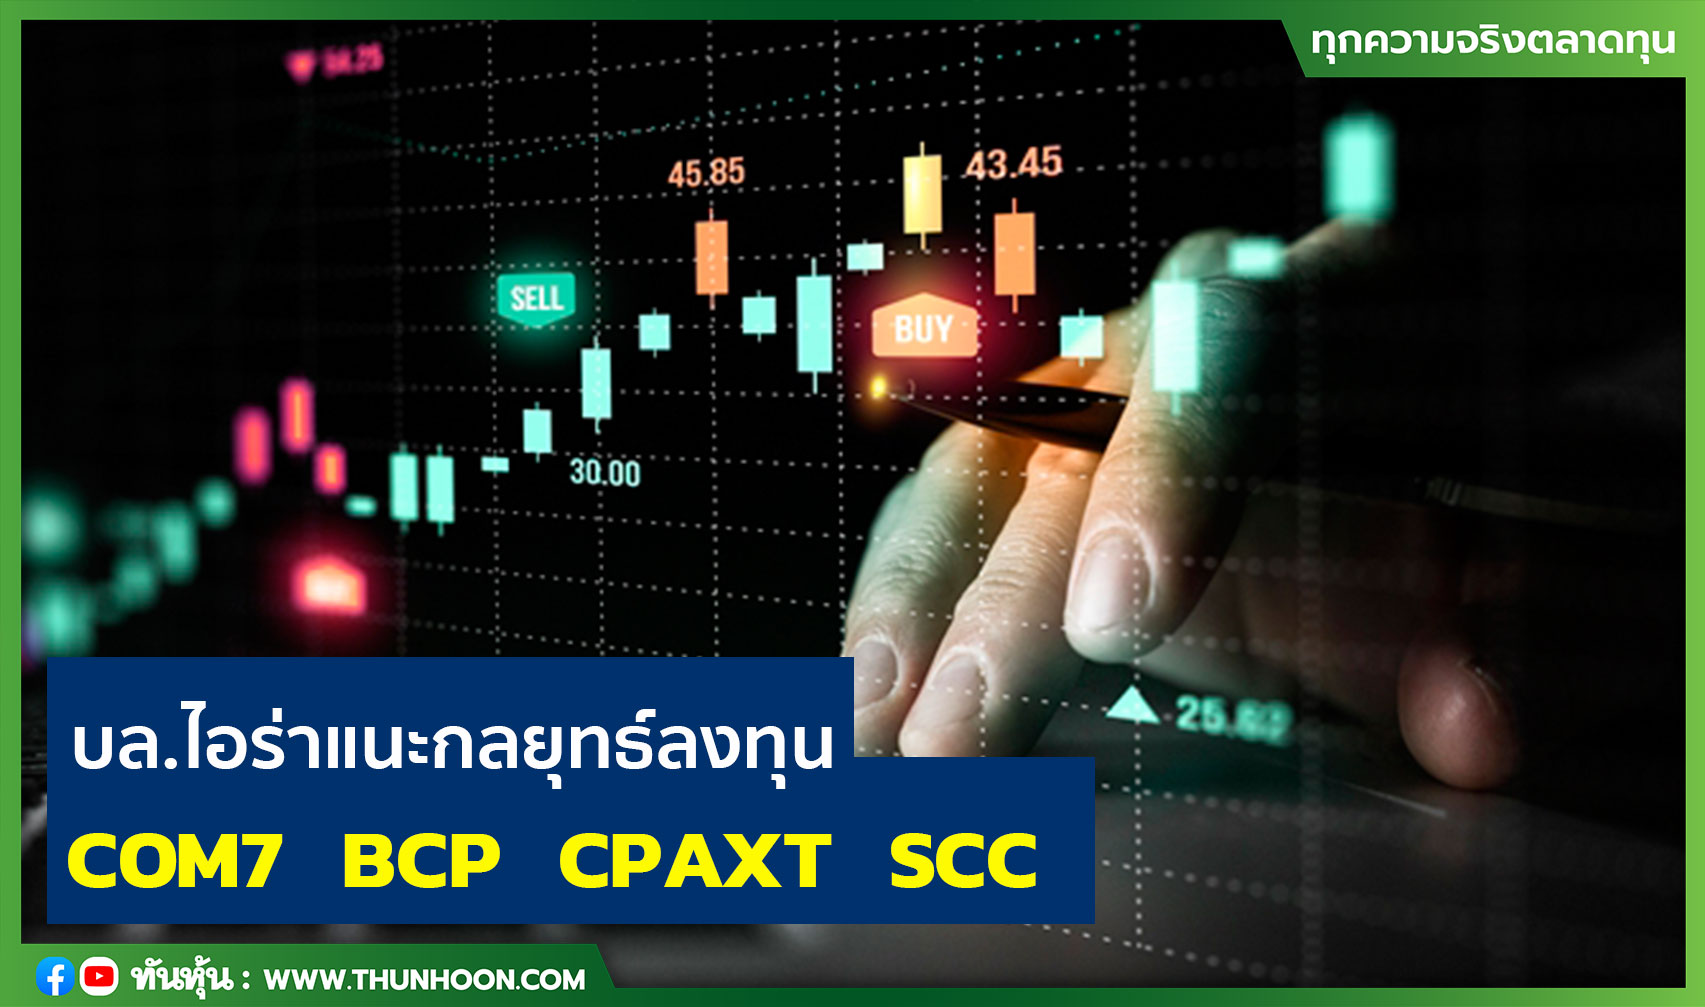  บล.ไอร่าแนะกลยุทธ์ลงทุน  COM7  BCP   CPAXT  SCC 